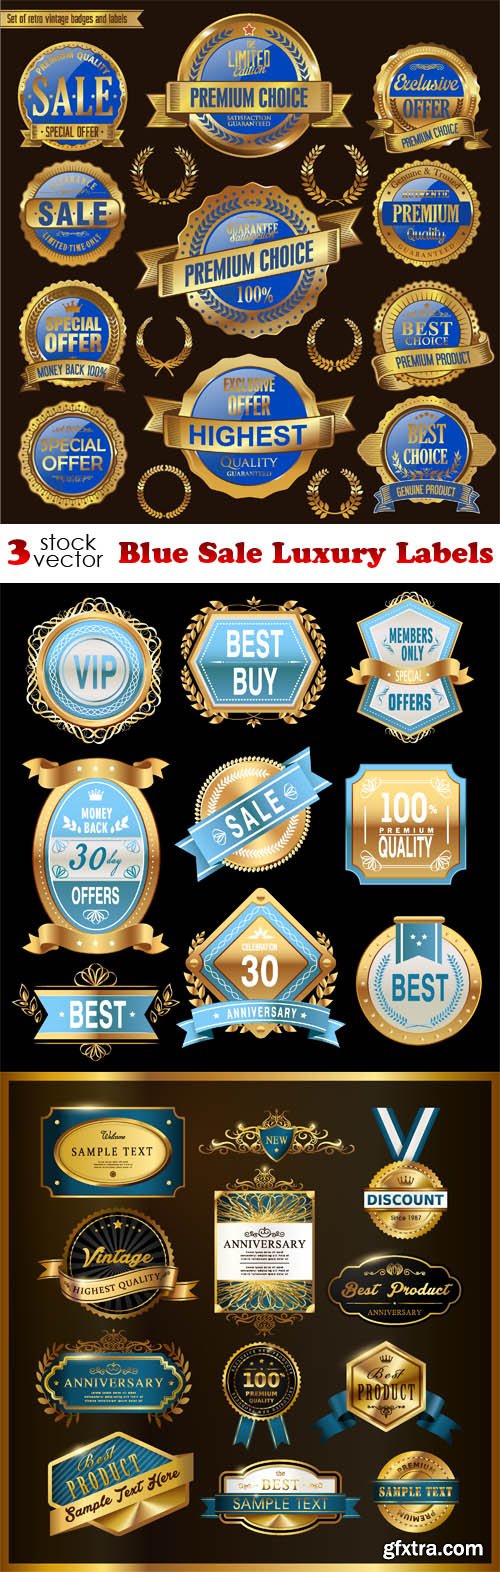 Vectors - Blue Sale Luxury Labels